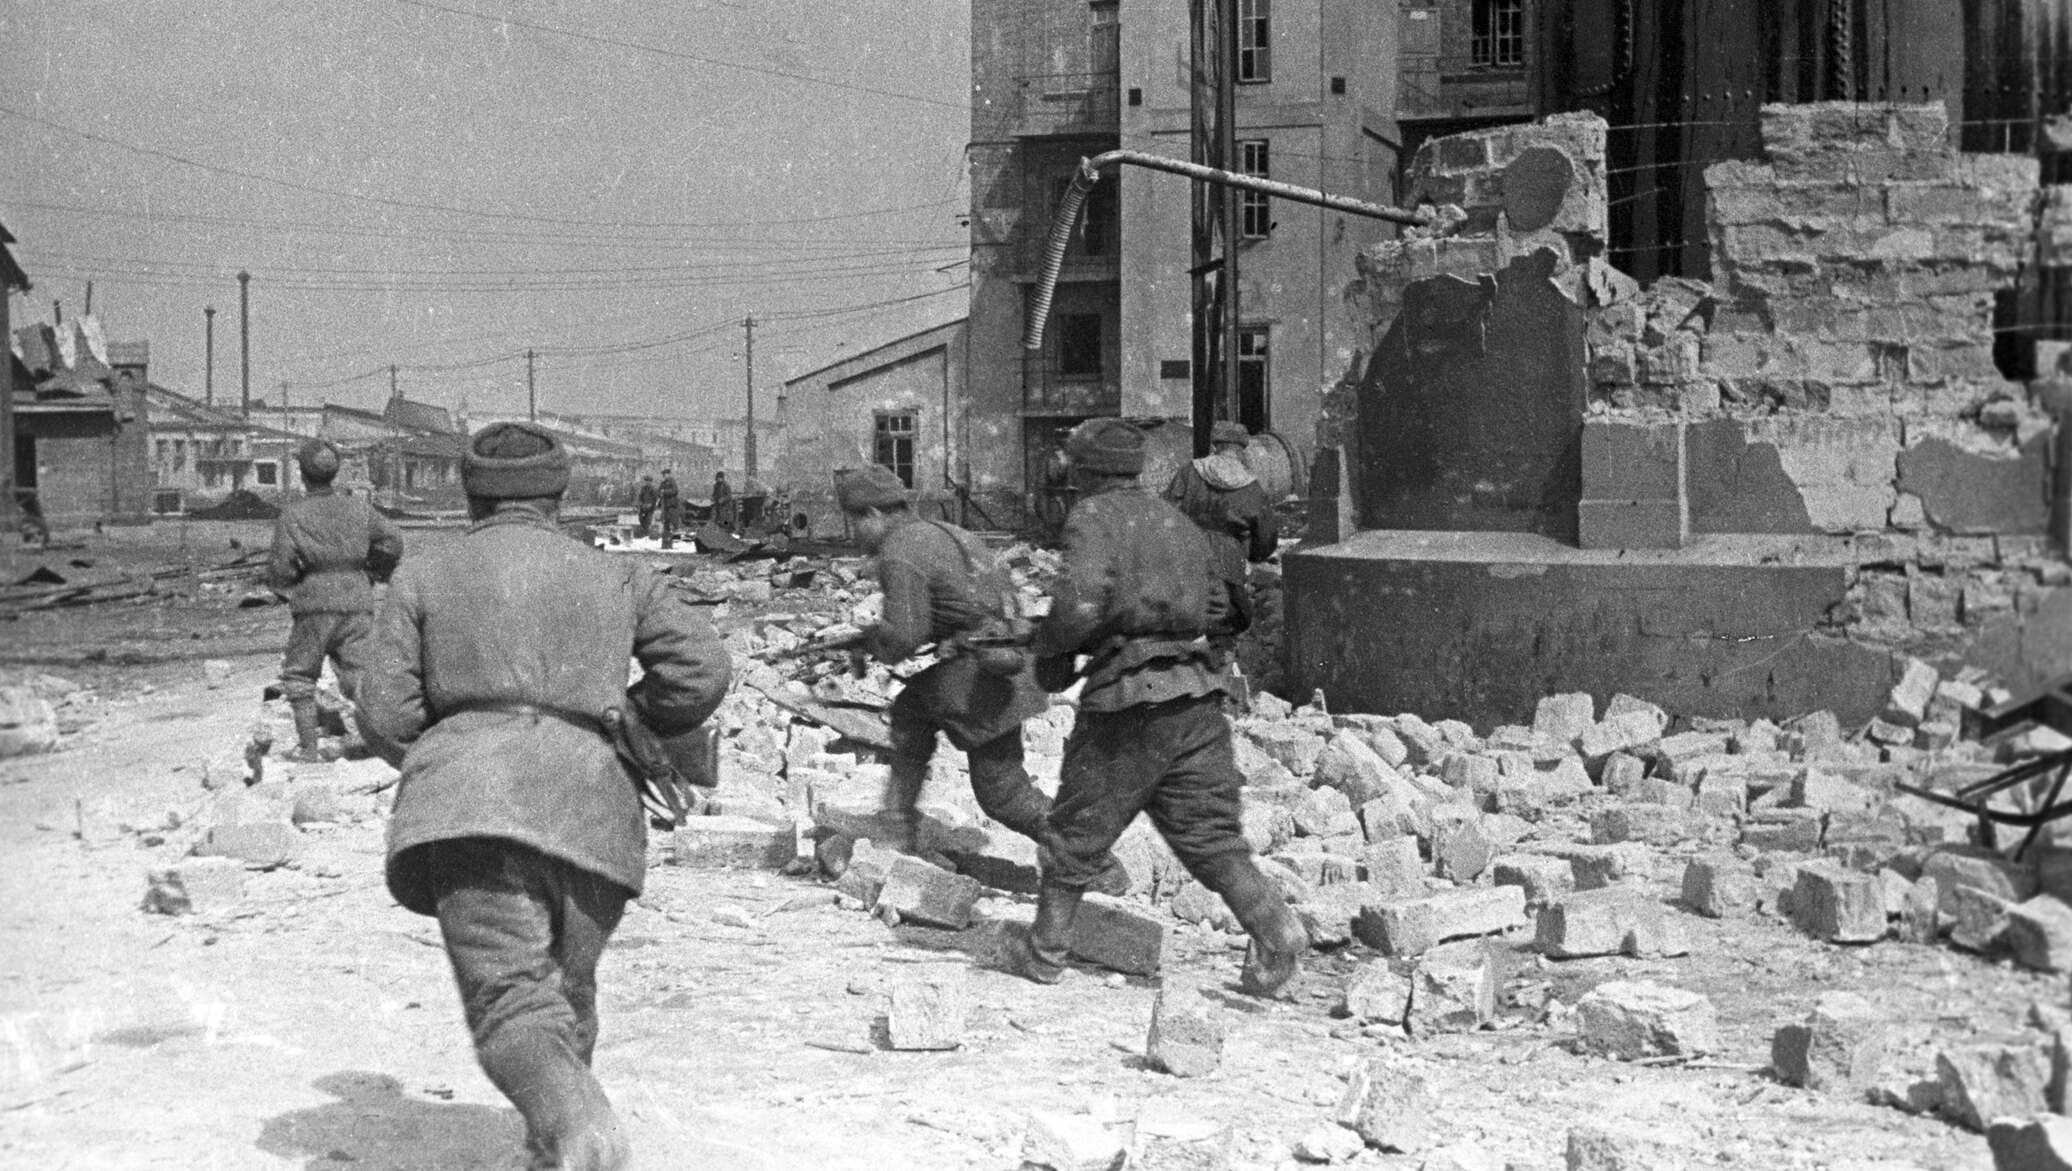 Одесса 10 апреля 1944 года